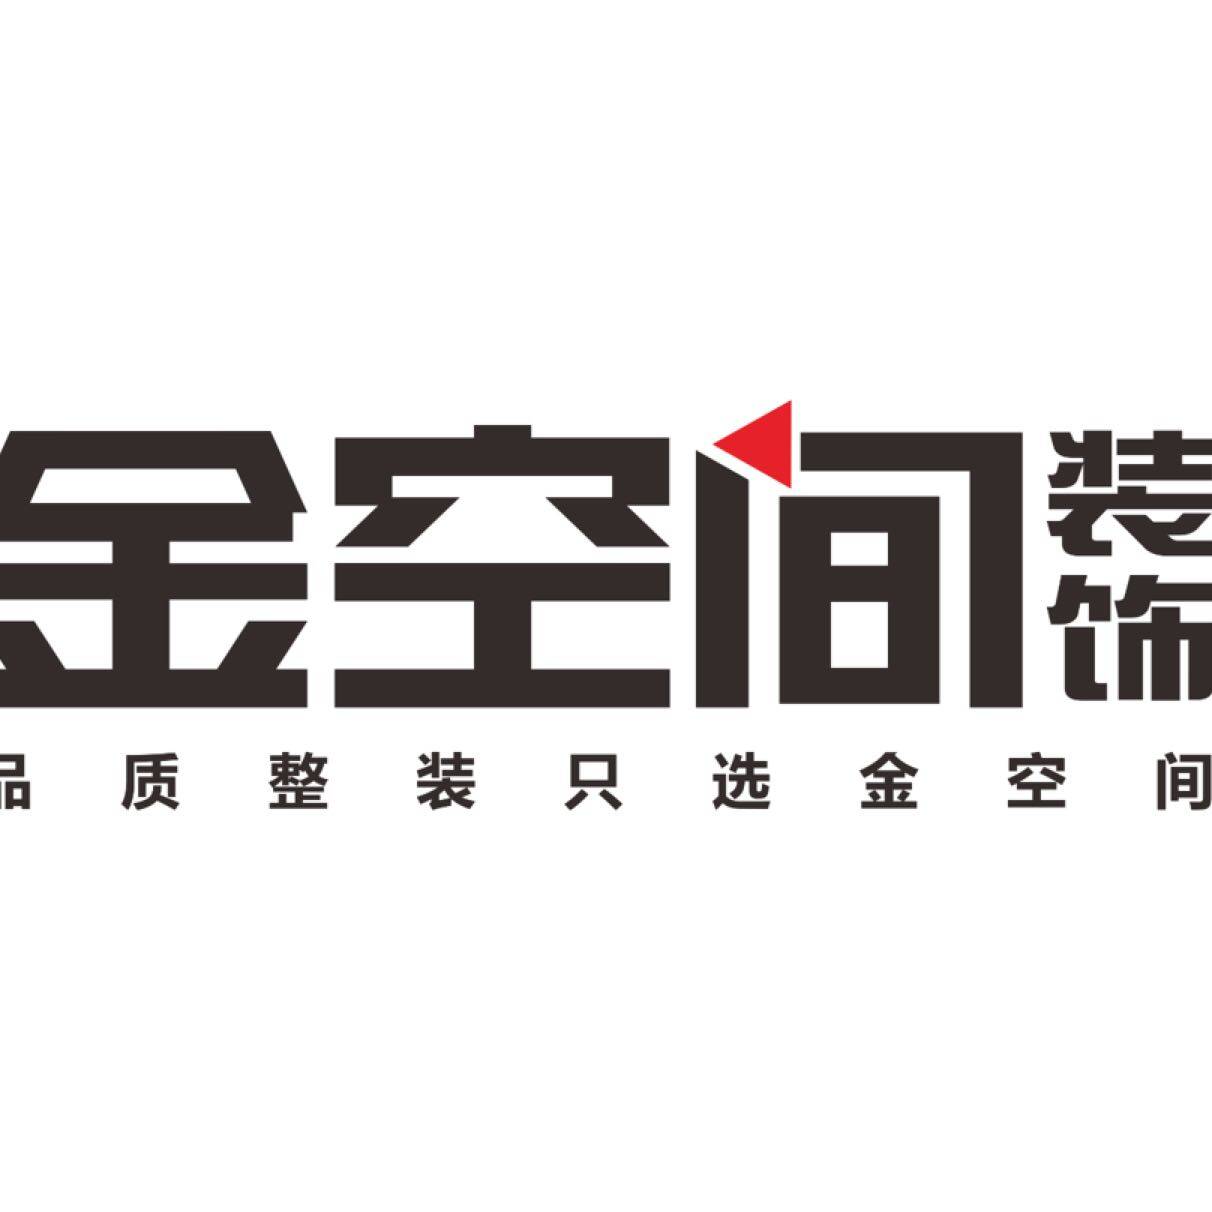 衡阳金空间装饰工程有限公司珠辉分公司logo